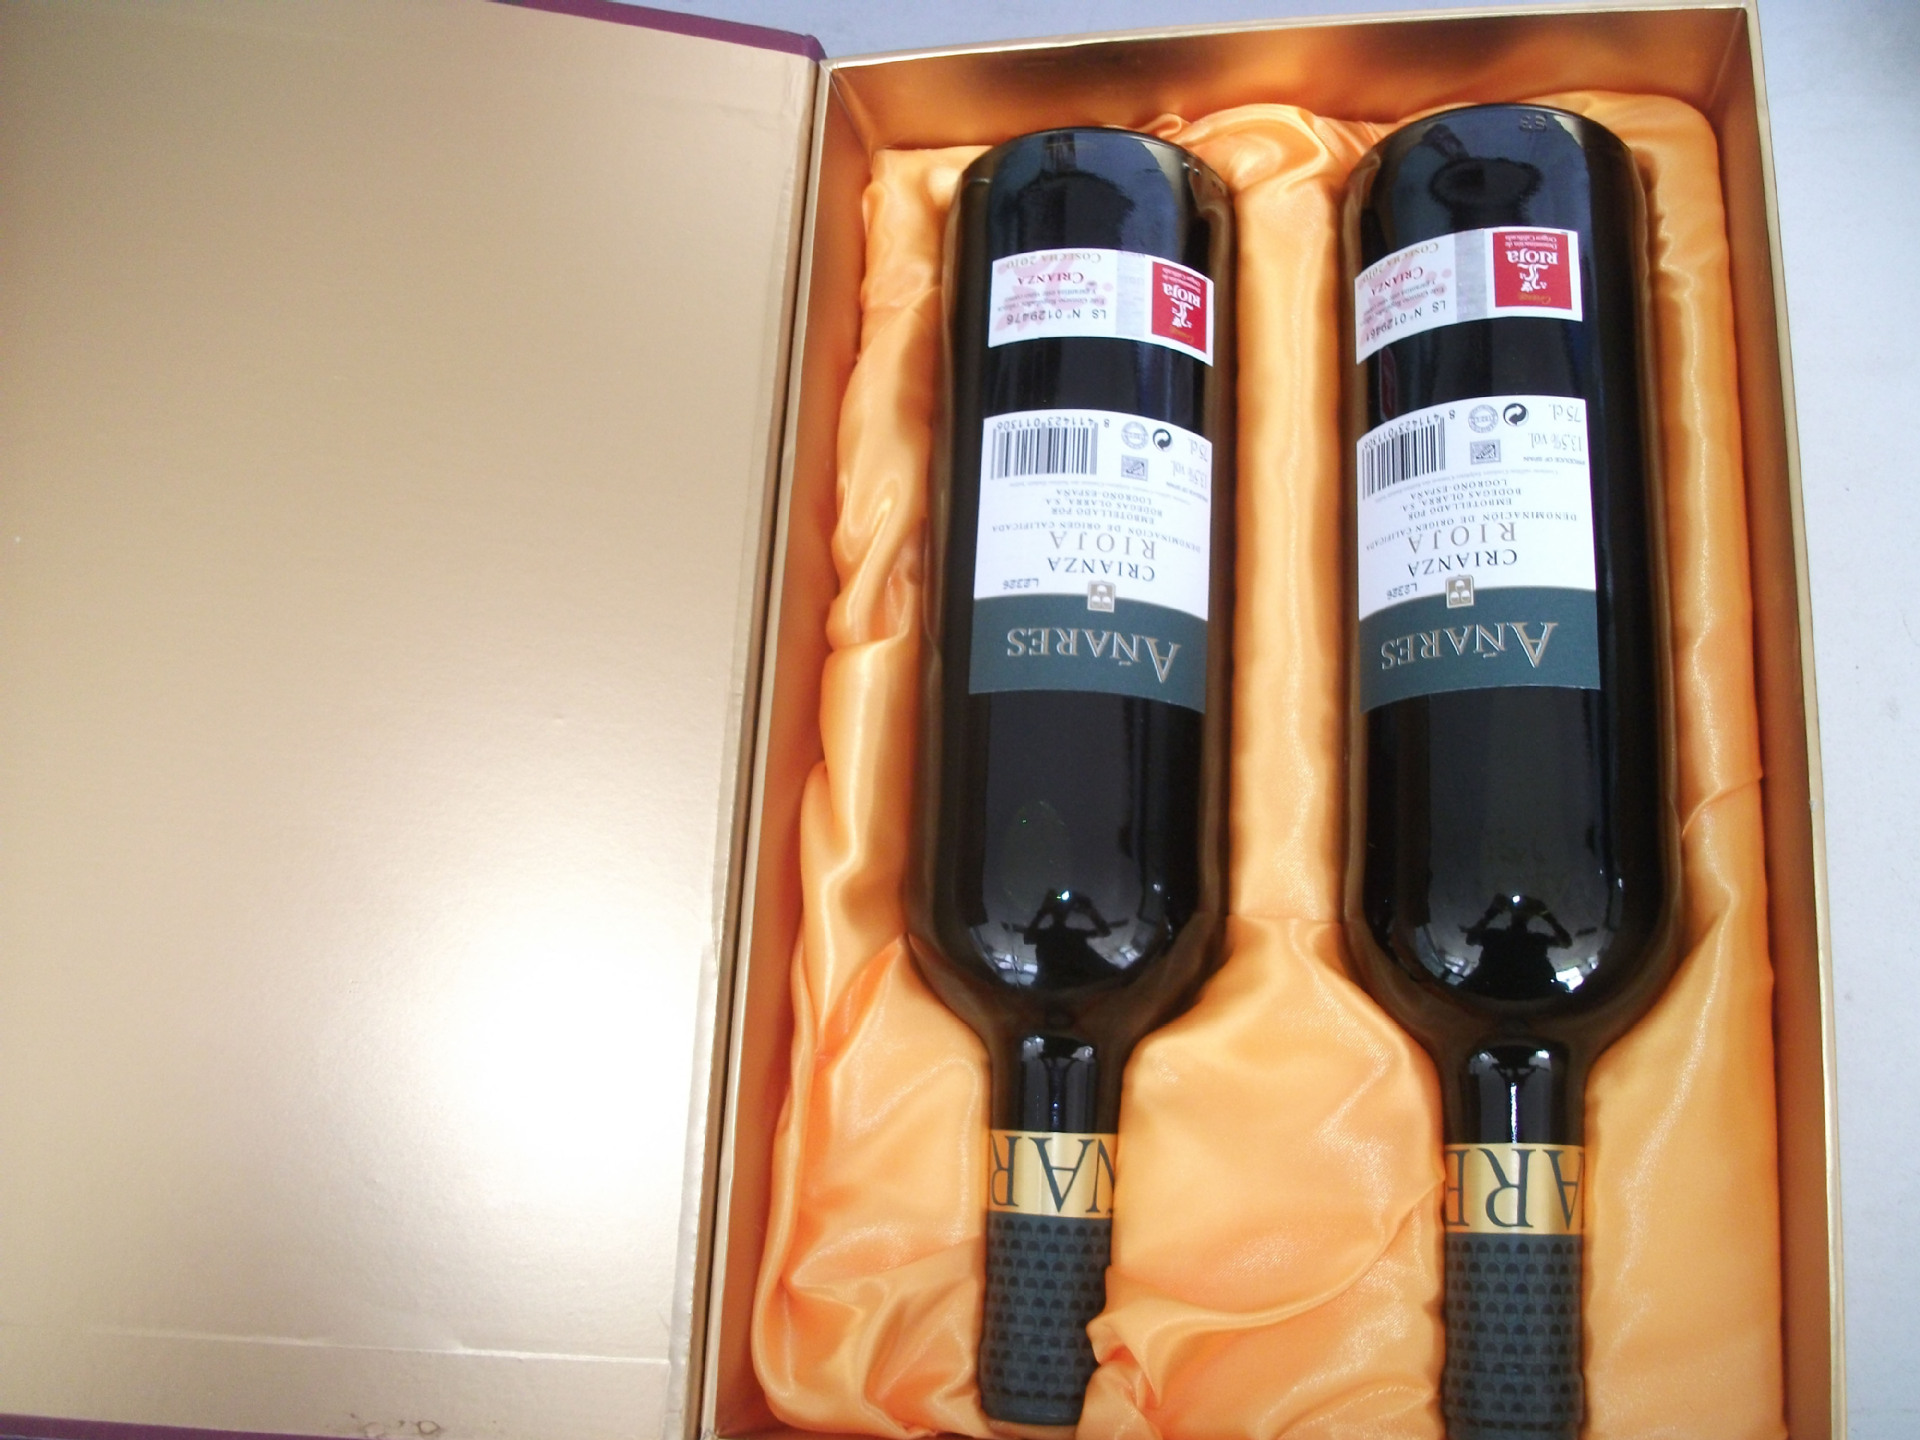 葡萄酒 进口 智利 西班牙 红酒图片,葡萄酒 进口